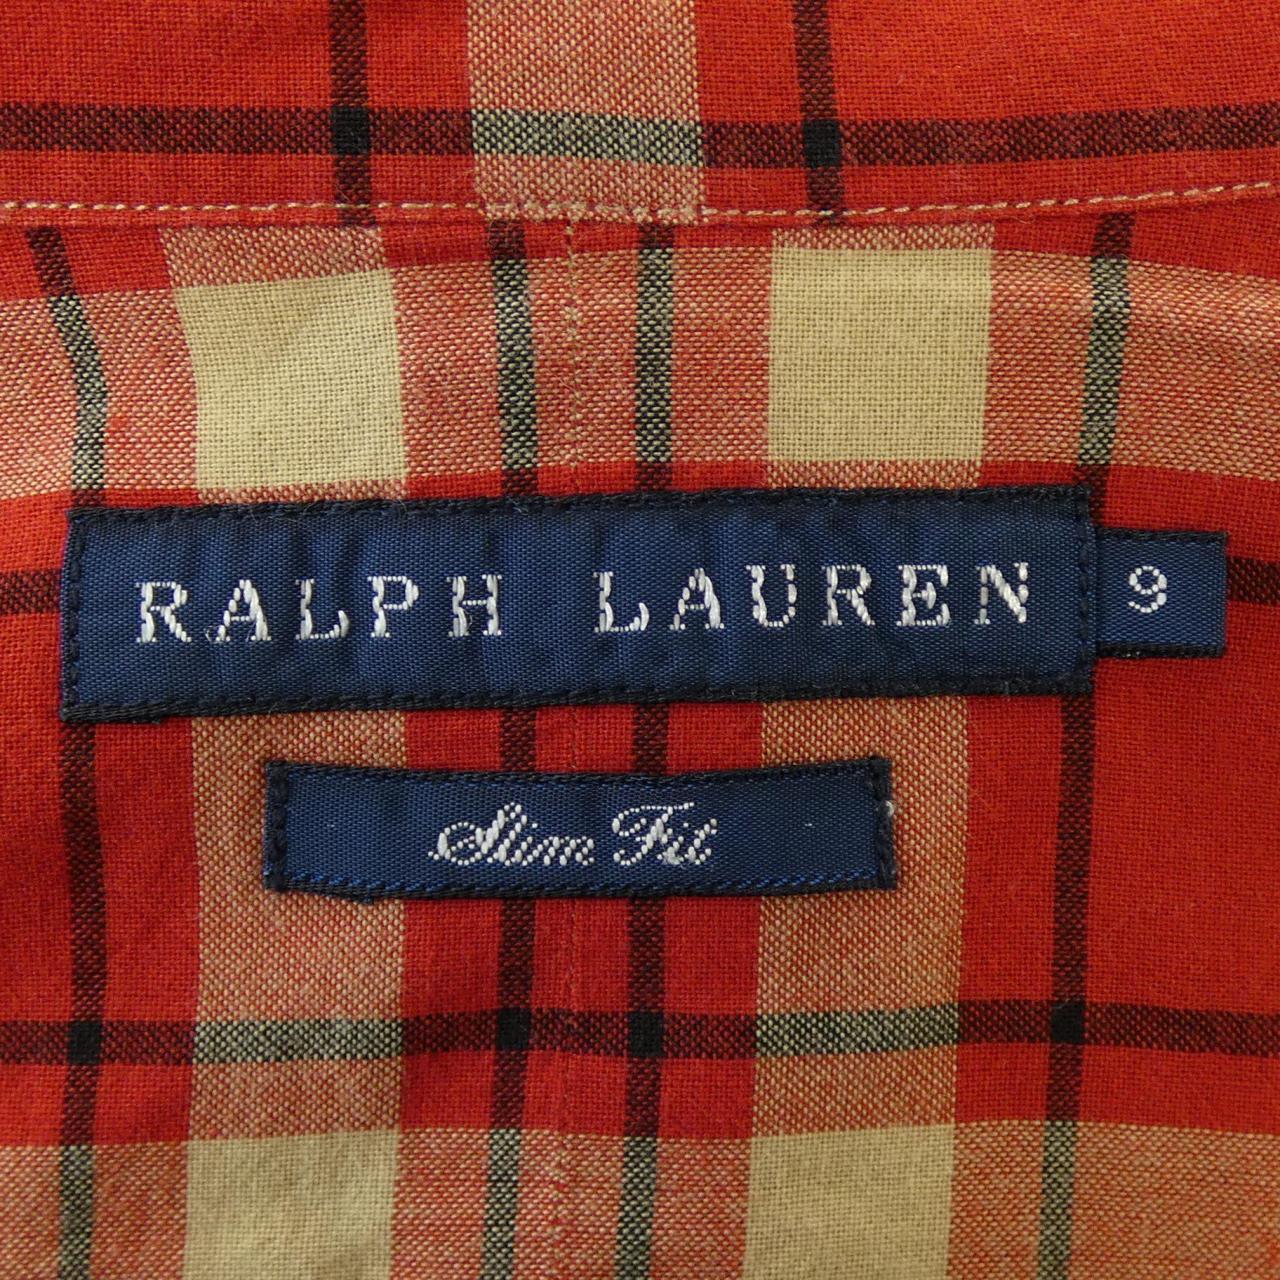 Ralph LaLPH LAUREN衬衫